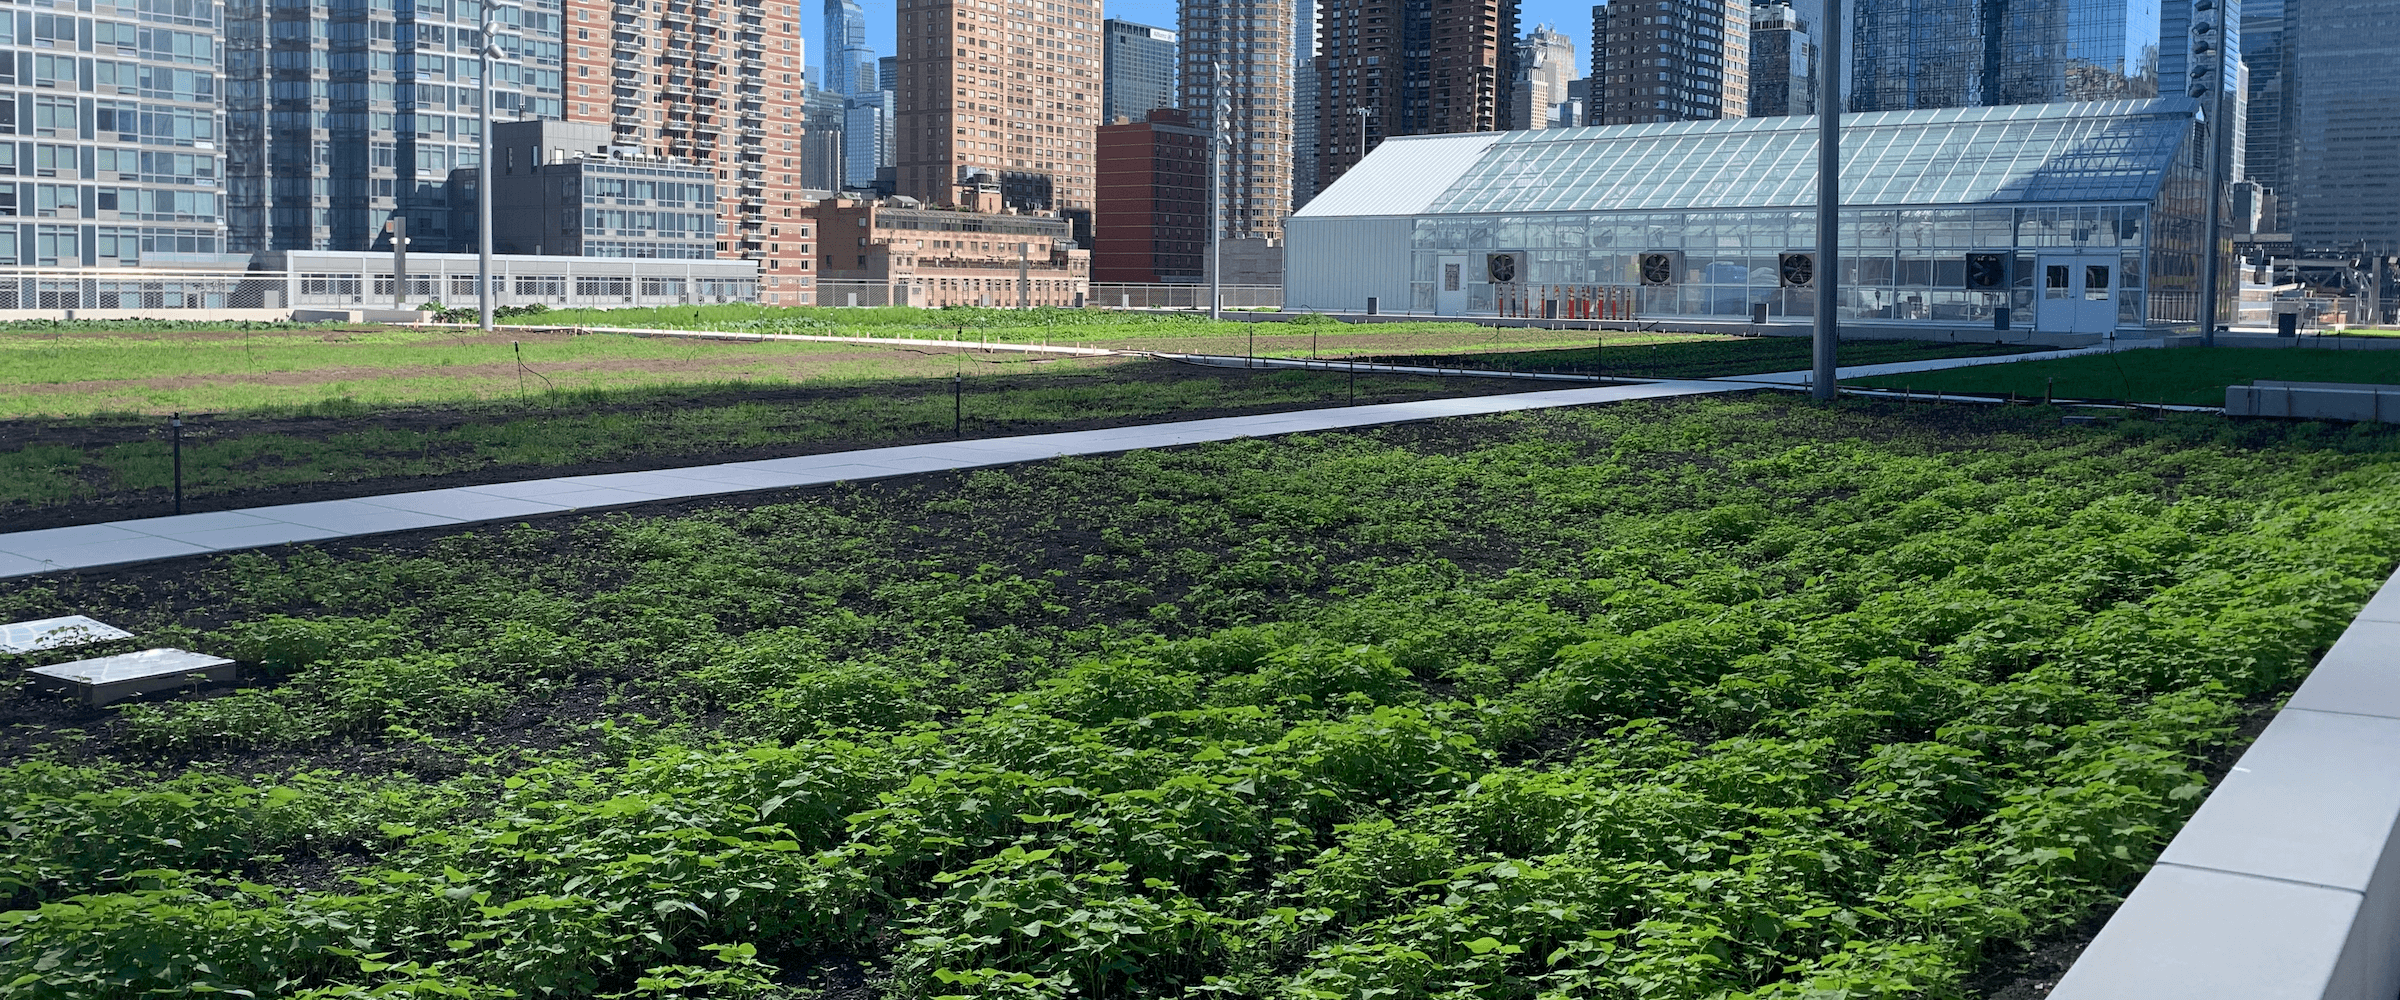 rooftop farm in a big city - Desktop Version